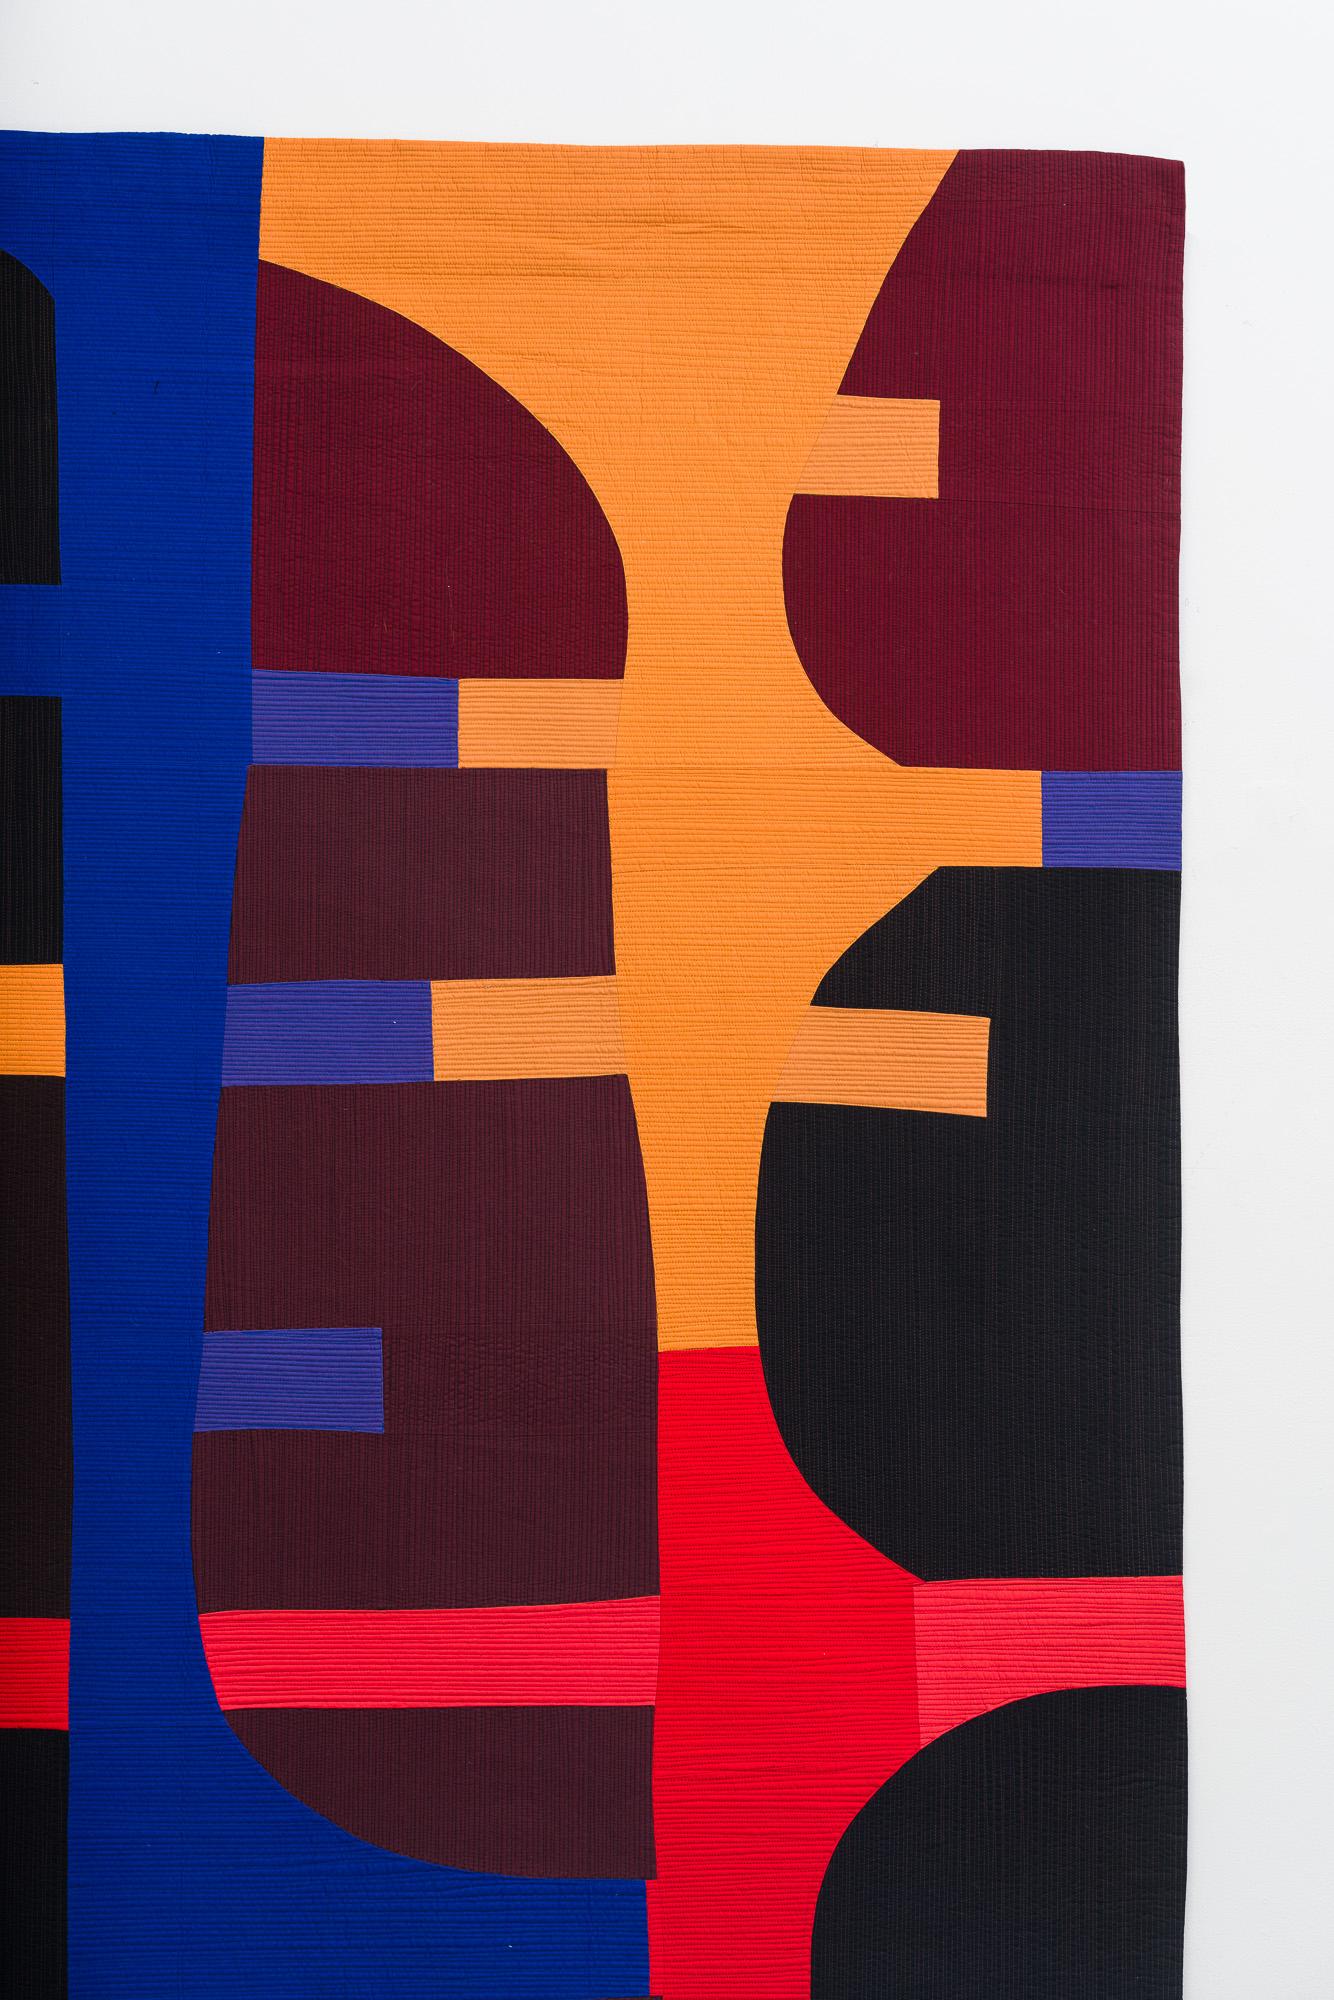 Die zeitgenössische Textilkünstlerin Gerri Spilka nimmt gewöhnliche Baumwollstücke und verwandelt sie in kraftvolle Collagen aus leuchtenden Farben. Dabei verbindet sie disparate Elemente des Quiltens, der modernen Abstraktion und der menschlichen